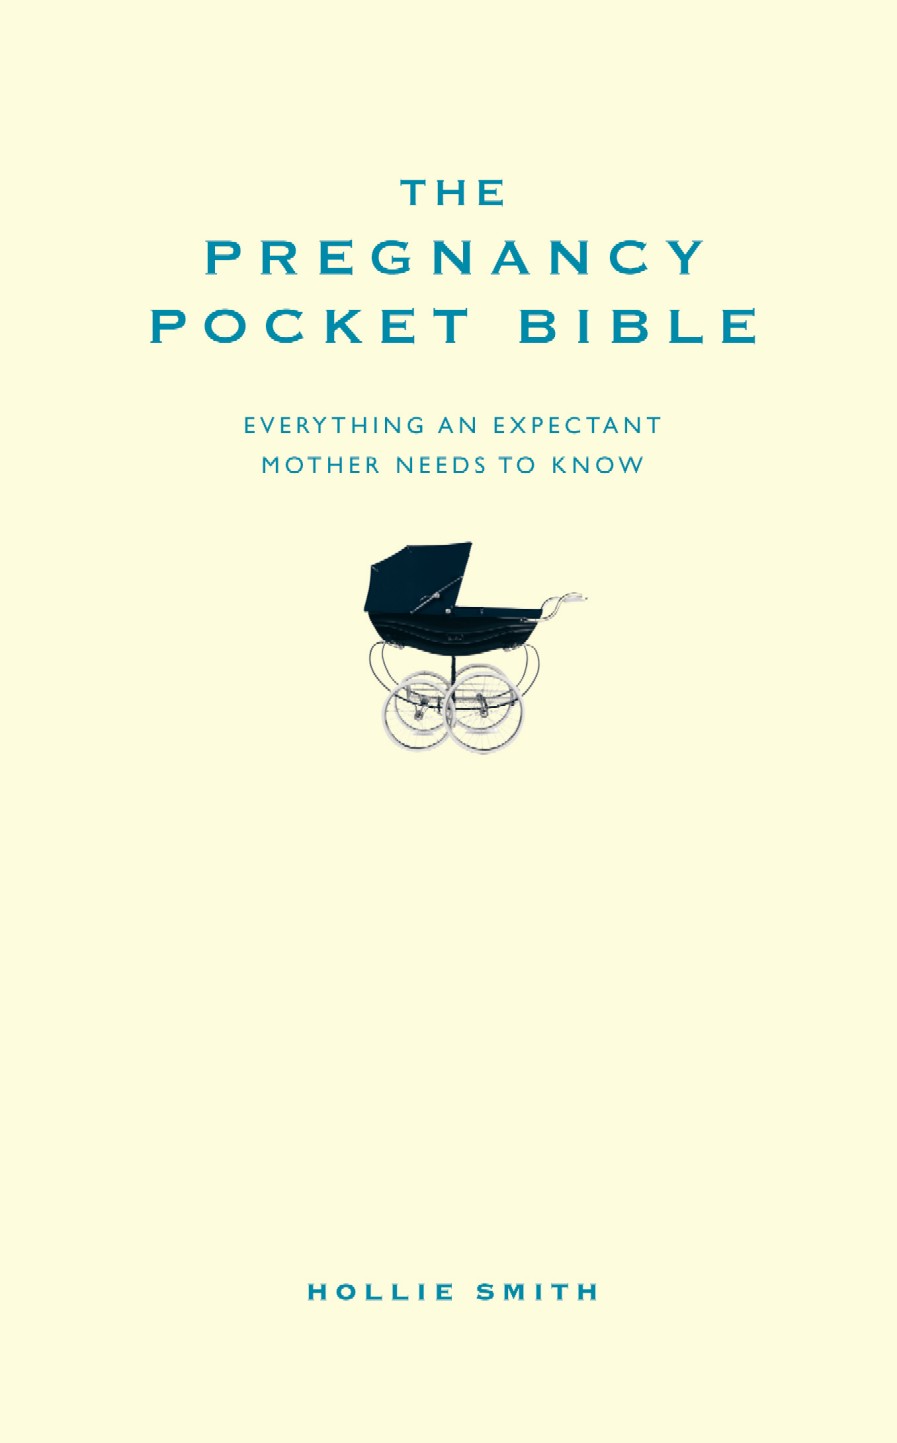 Pregnacy Pocket Bible